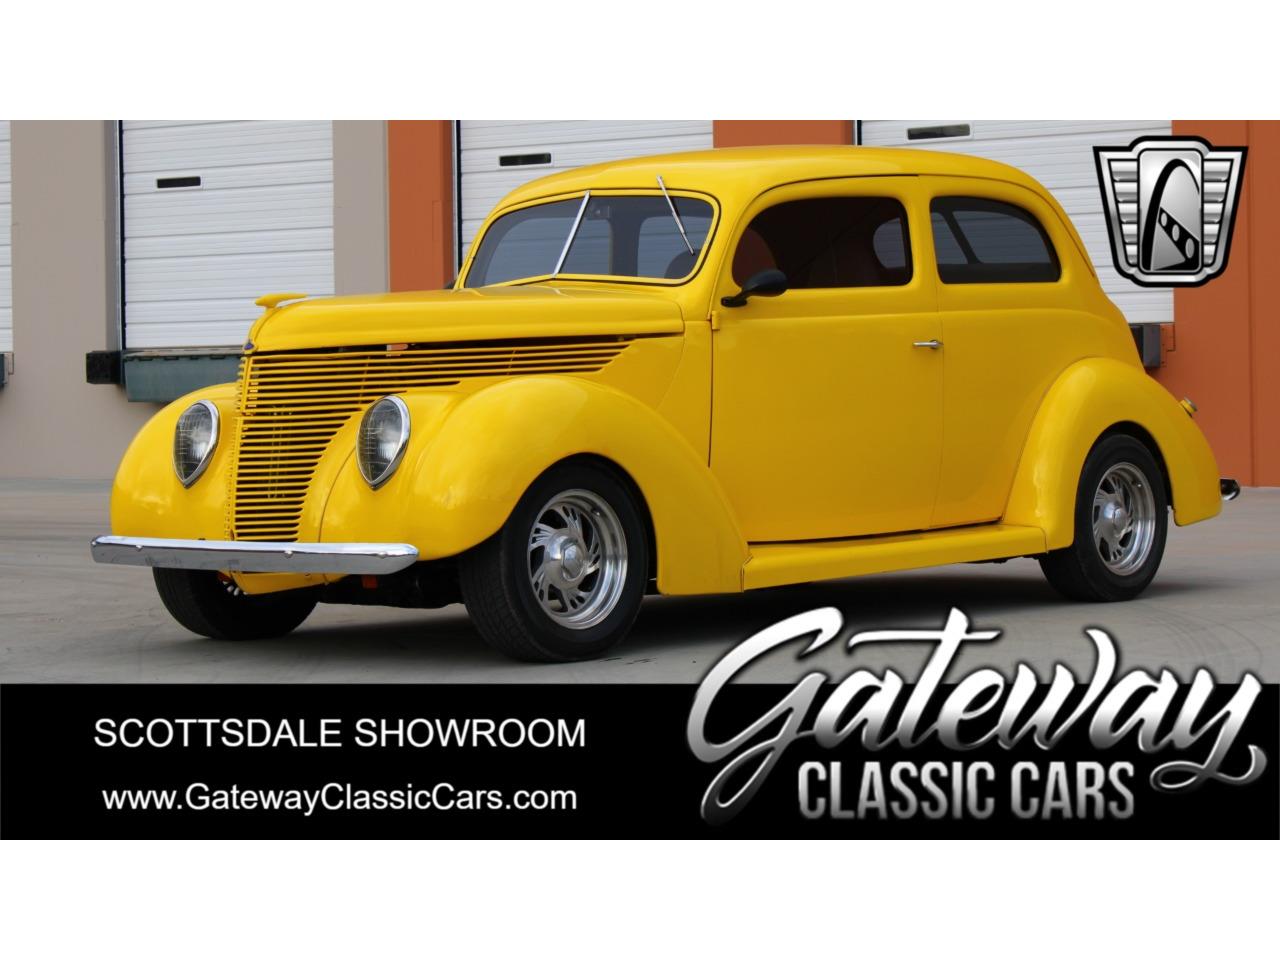 For Sale: 1938 Ford Coupe in O'Fallon, Illinois for sale in O Fallon, IL